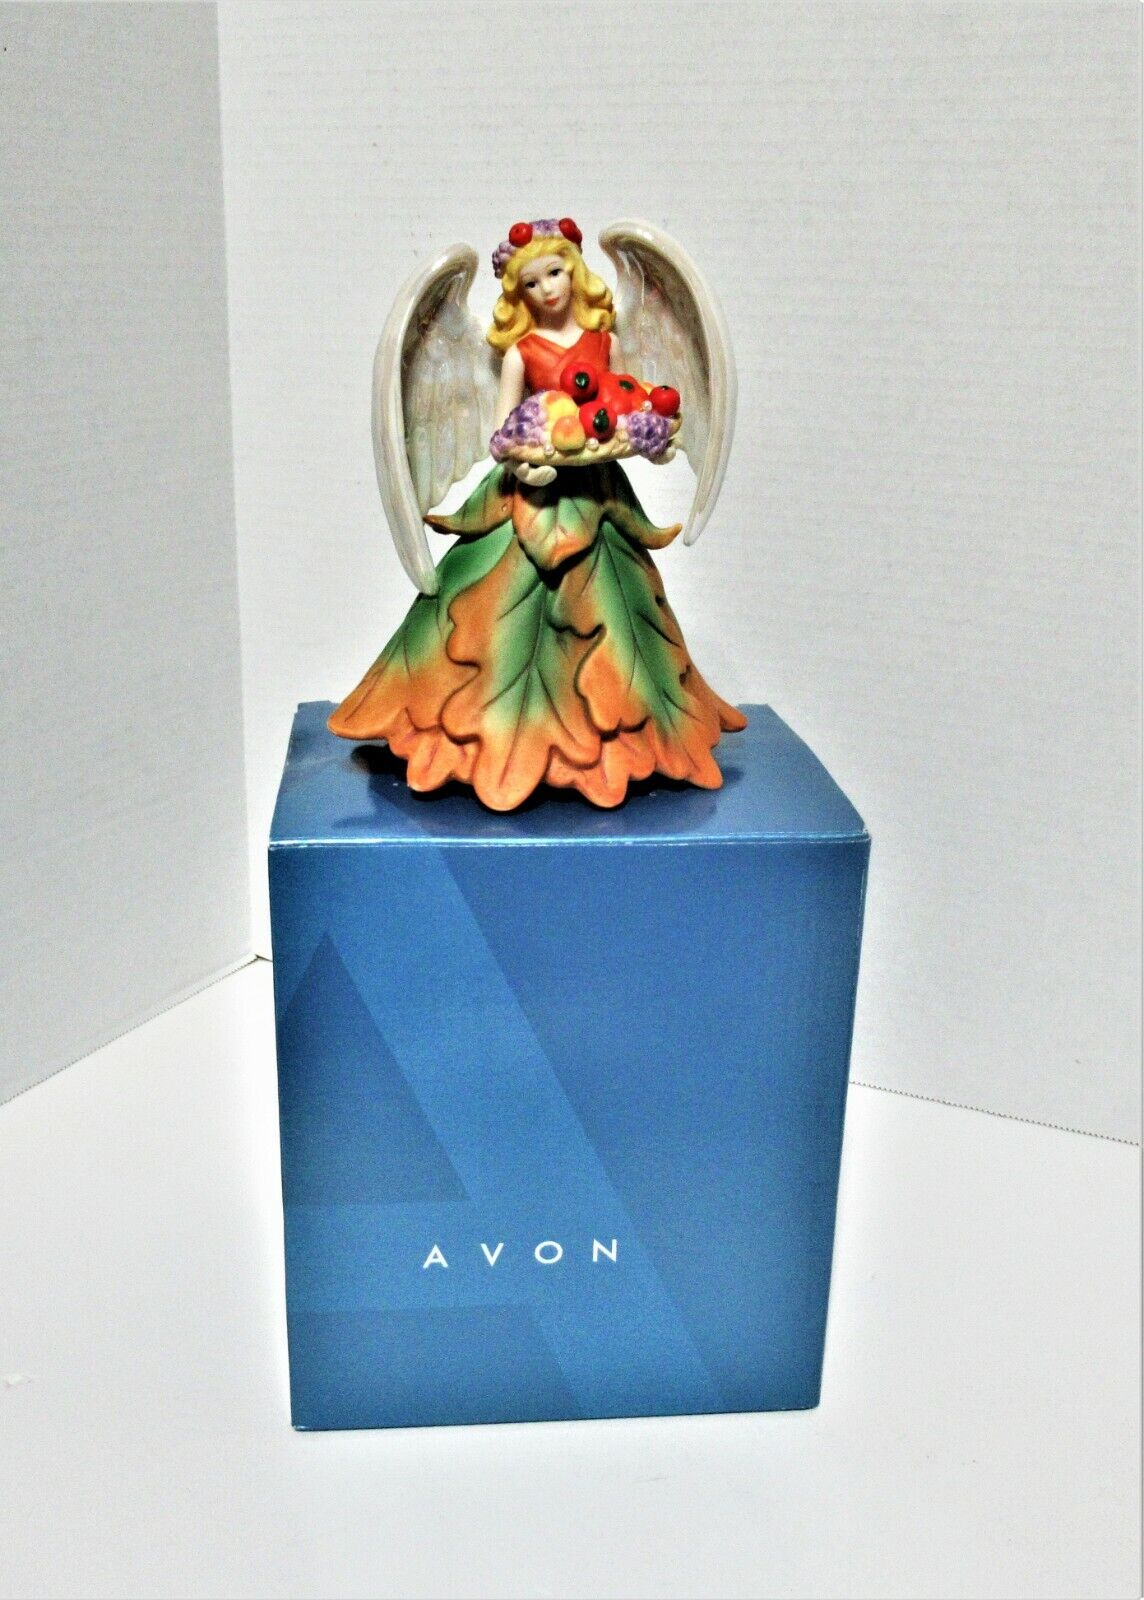 Avon Joyful Flowers Collectible Angel Series Autumn leaves Figurine 2006 Vintage